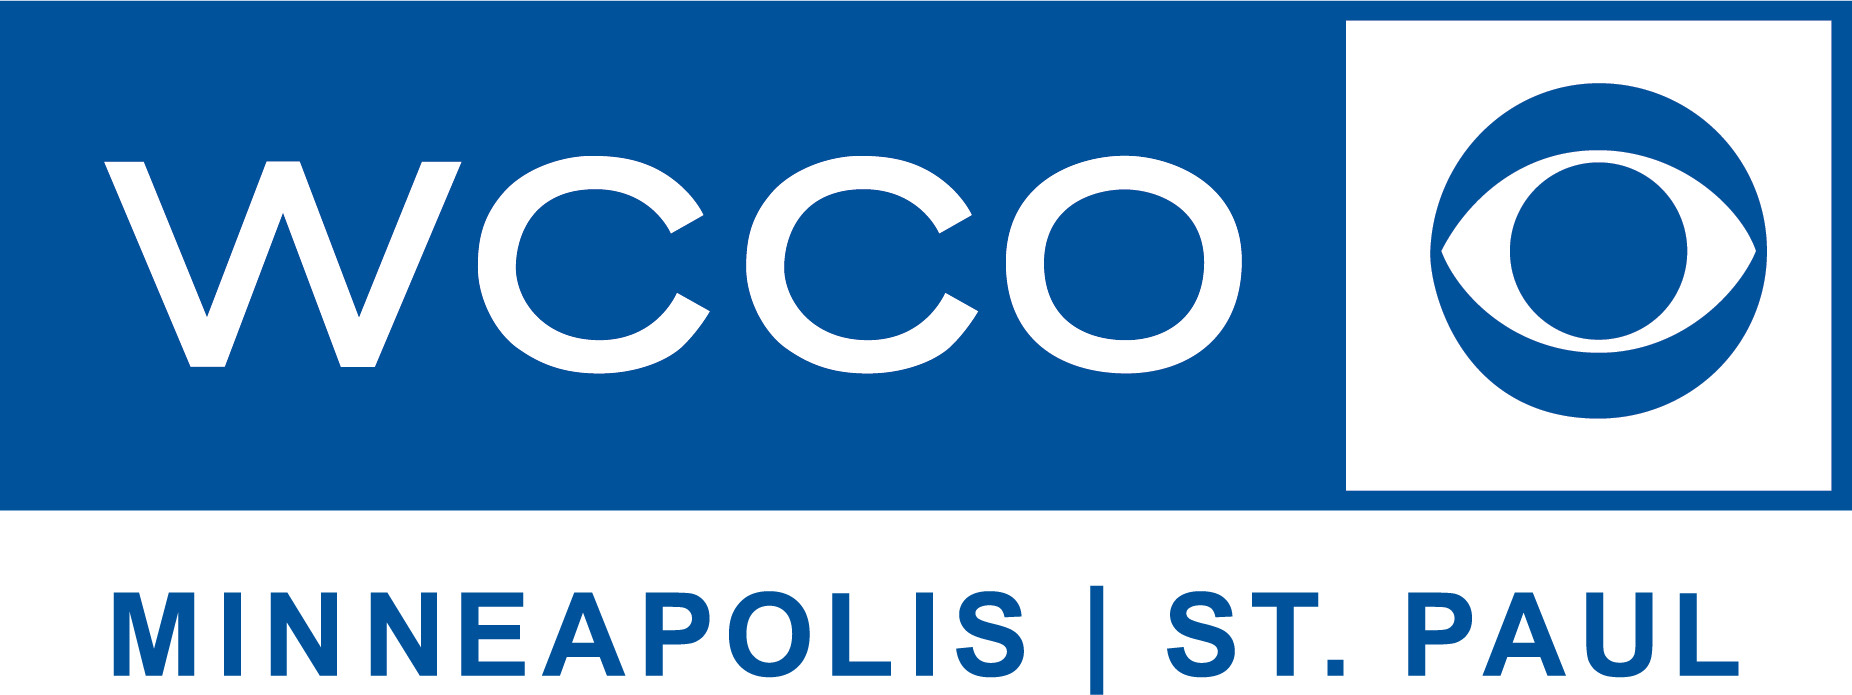 WCCO TV Logo